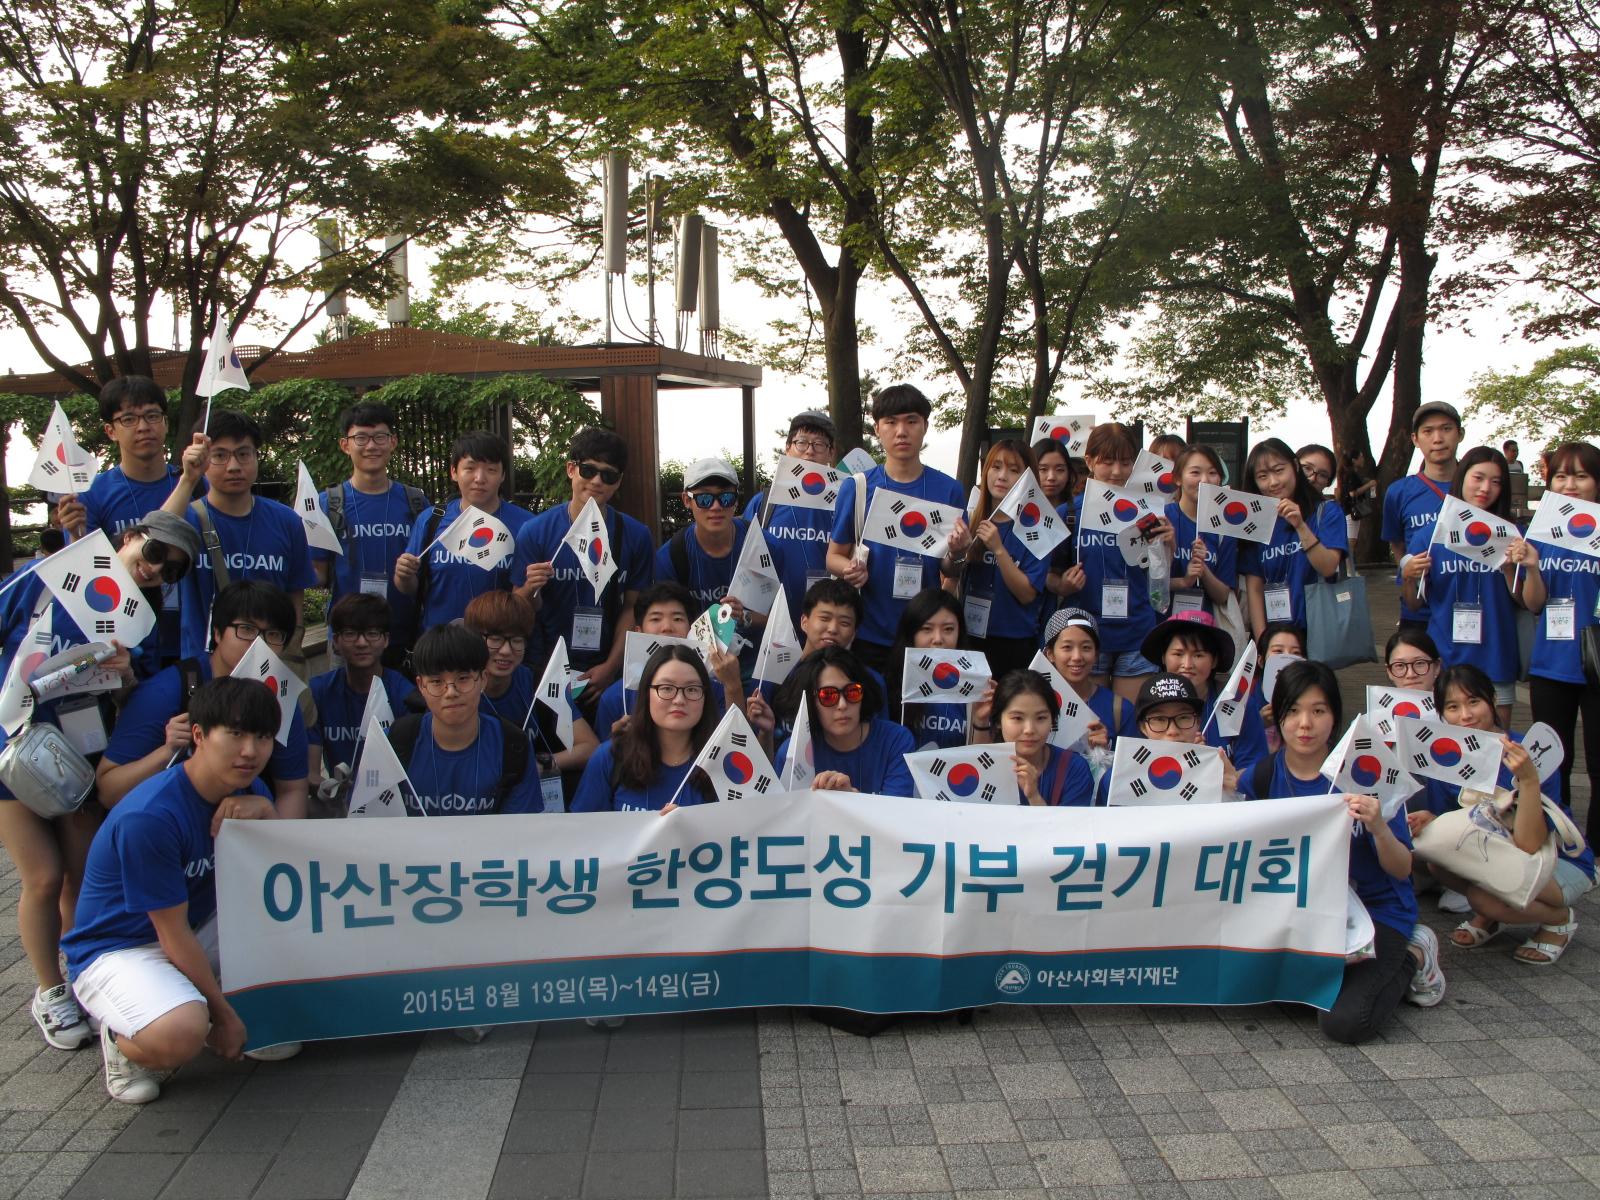 아산장학생은 나눔문화 확산을 위해 8.13일과 14일 한양도성 걷기 행사를 개최했습니다.2